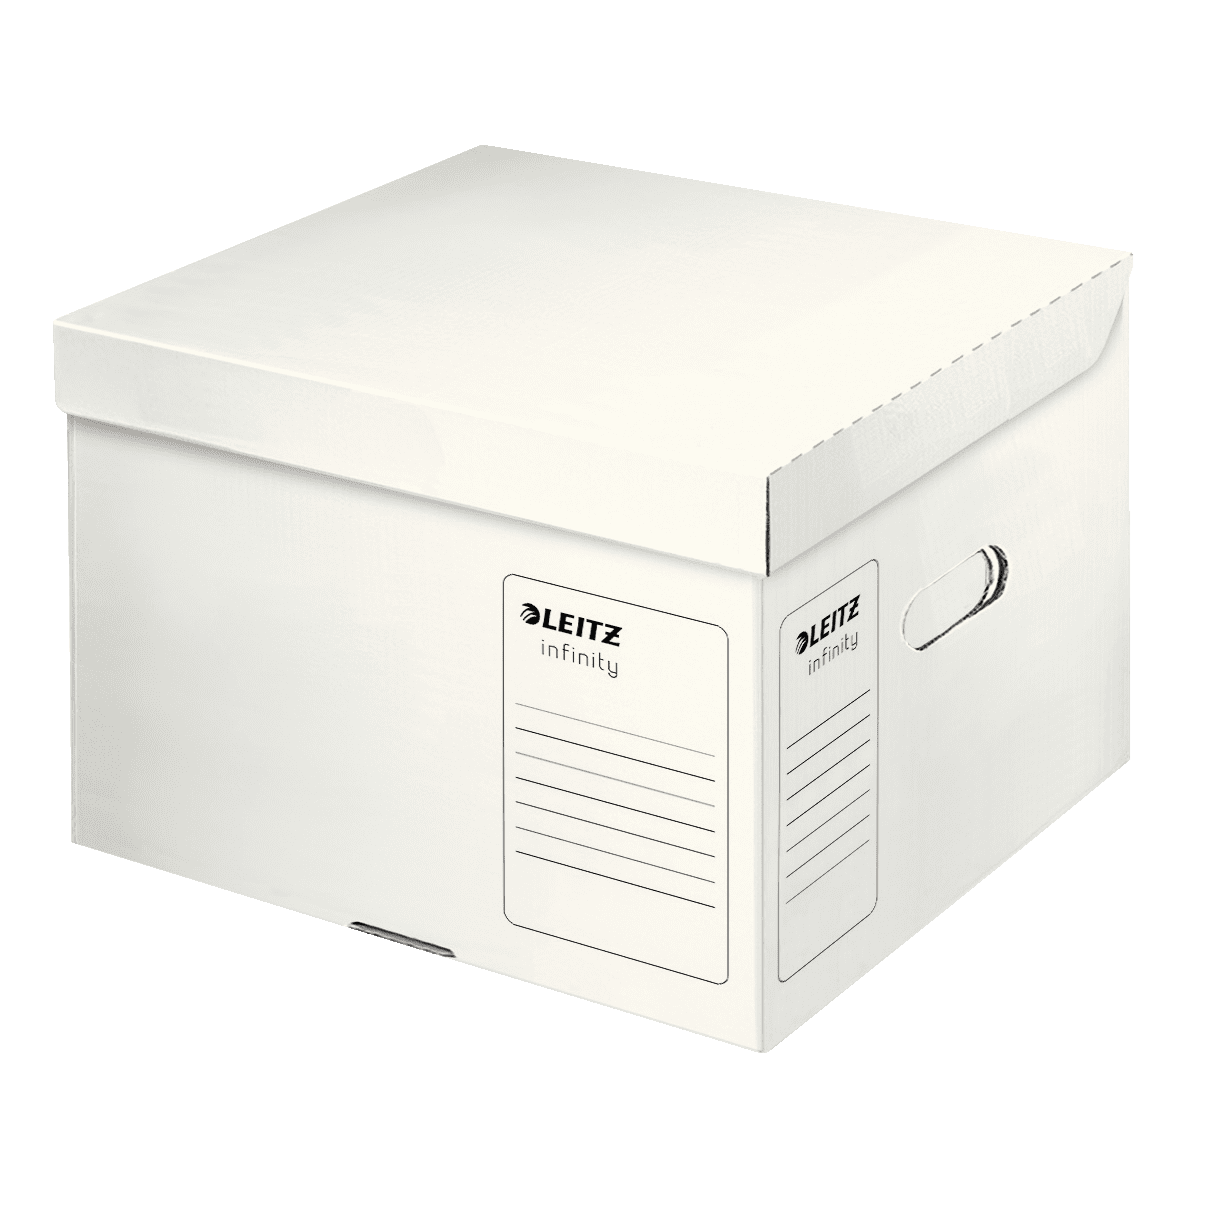 Speciální archivační kontejner s víkem Leitz Infinity velikosti M, bílá